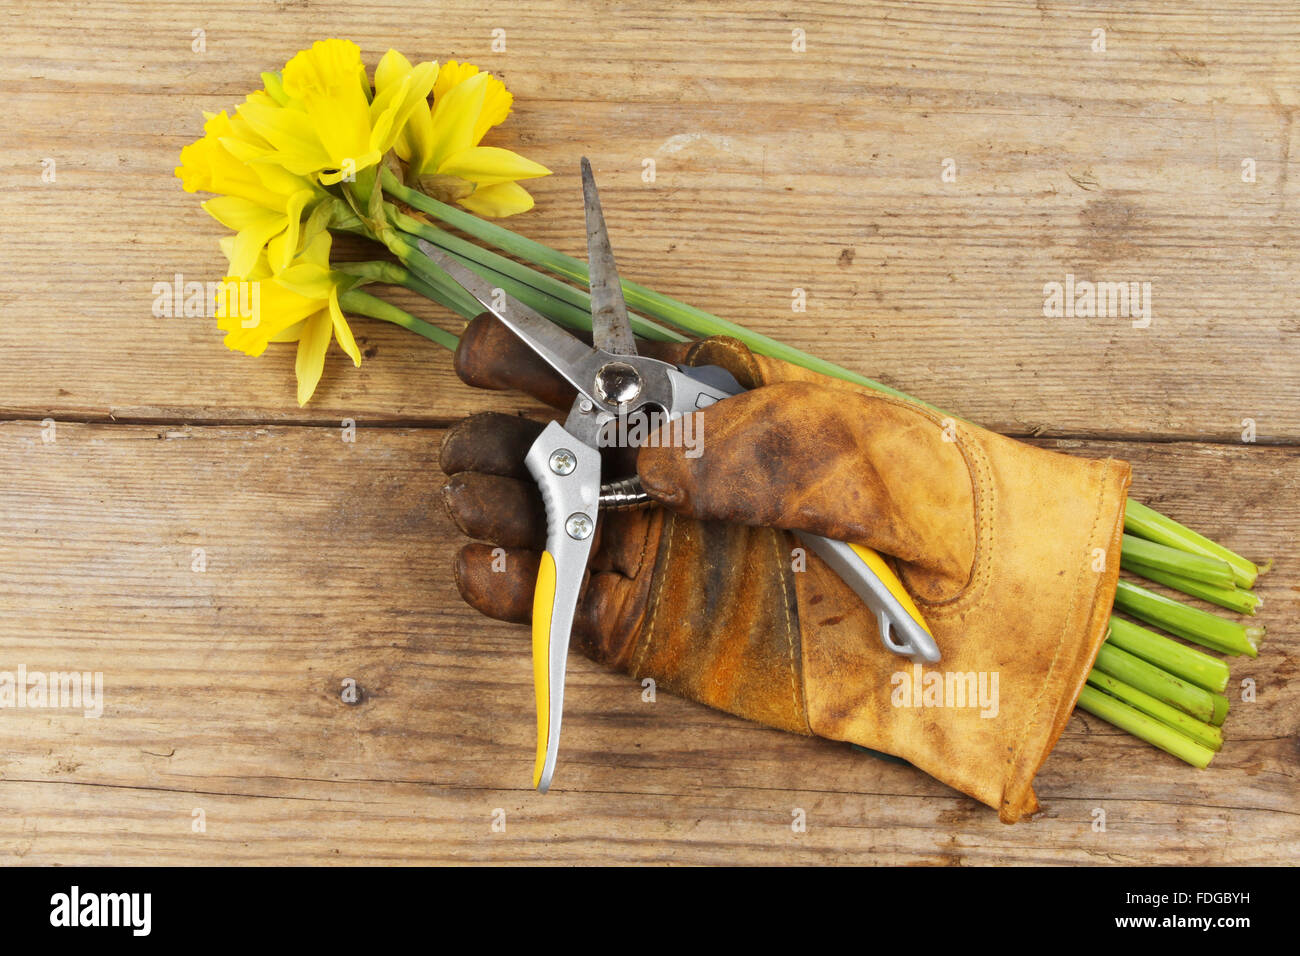 Jonquilles fraîchement coupées avec un gant de jardinage et sécateurs sur une planche en bois Banque D'Images